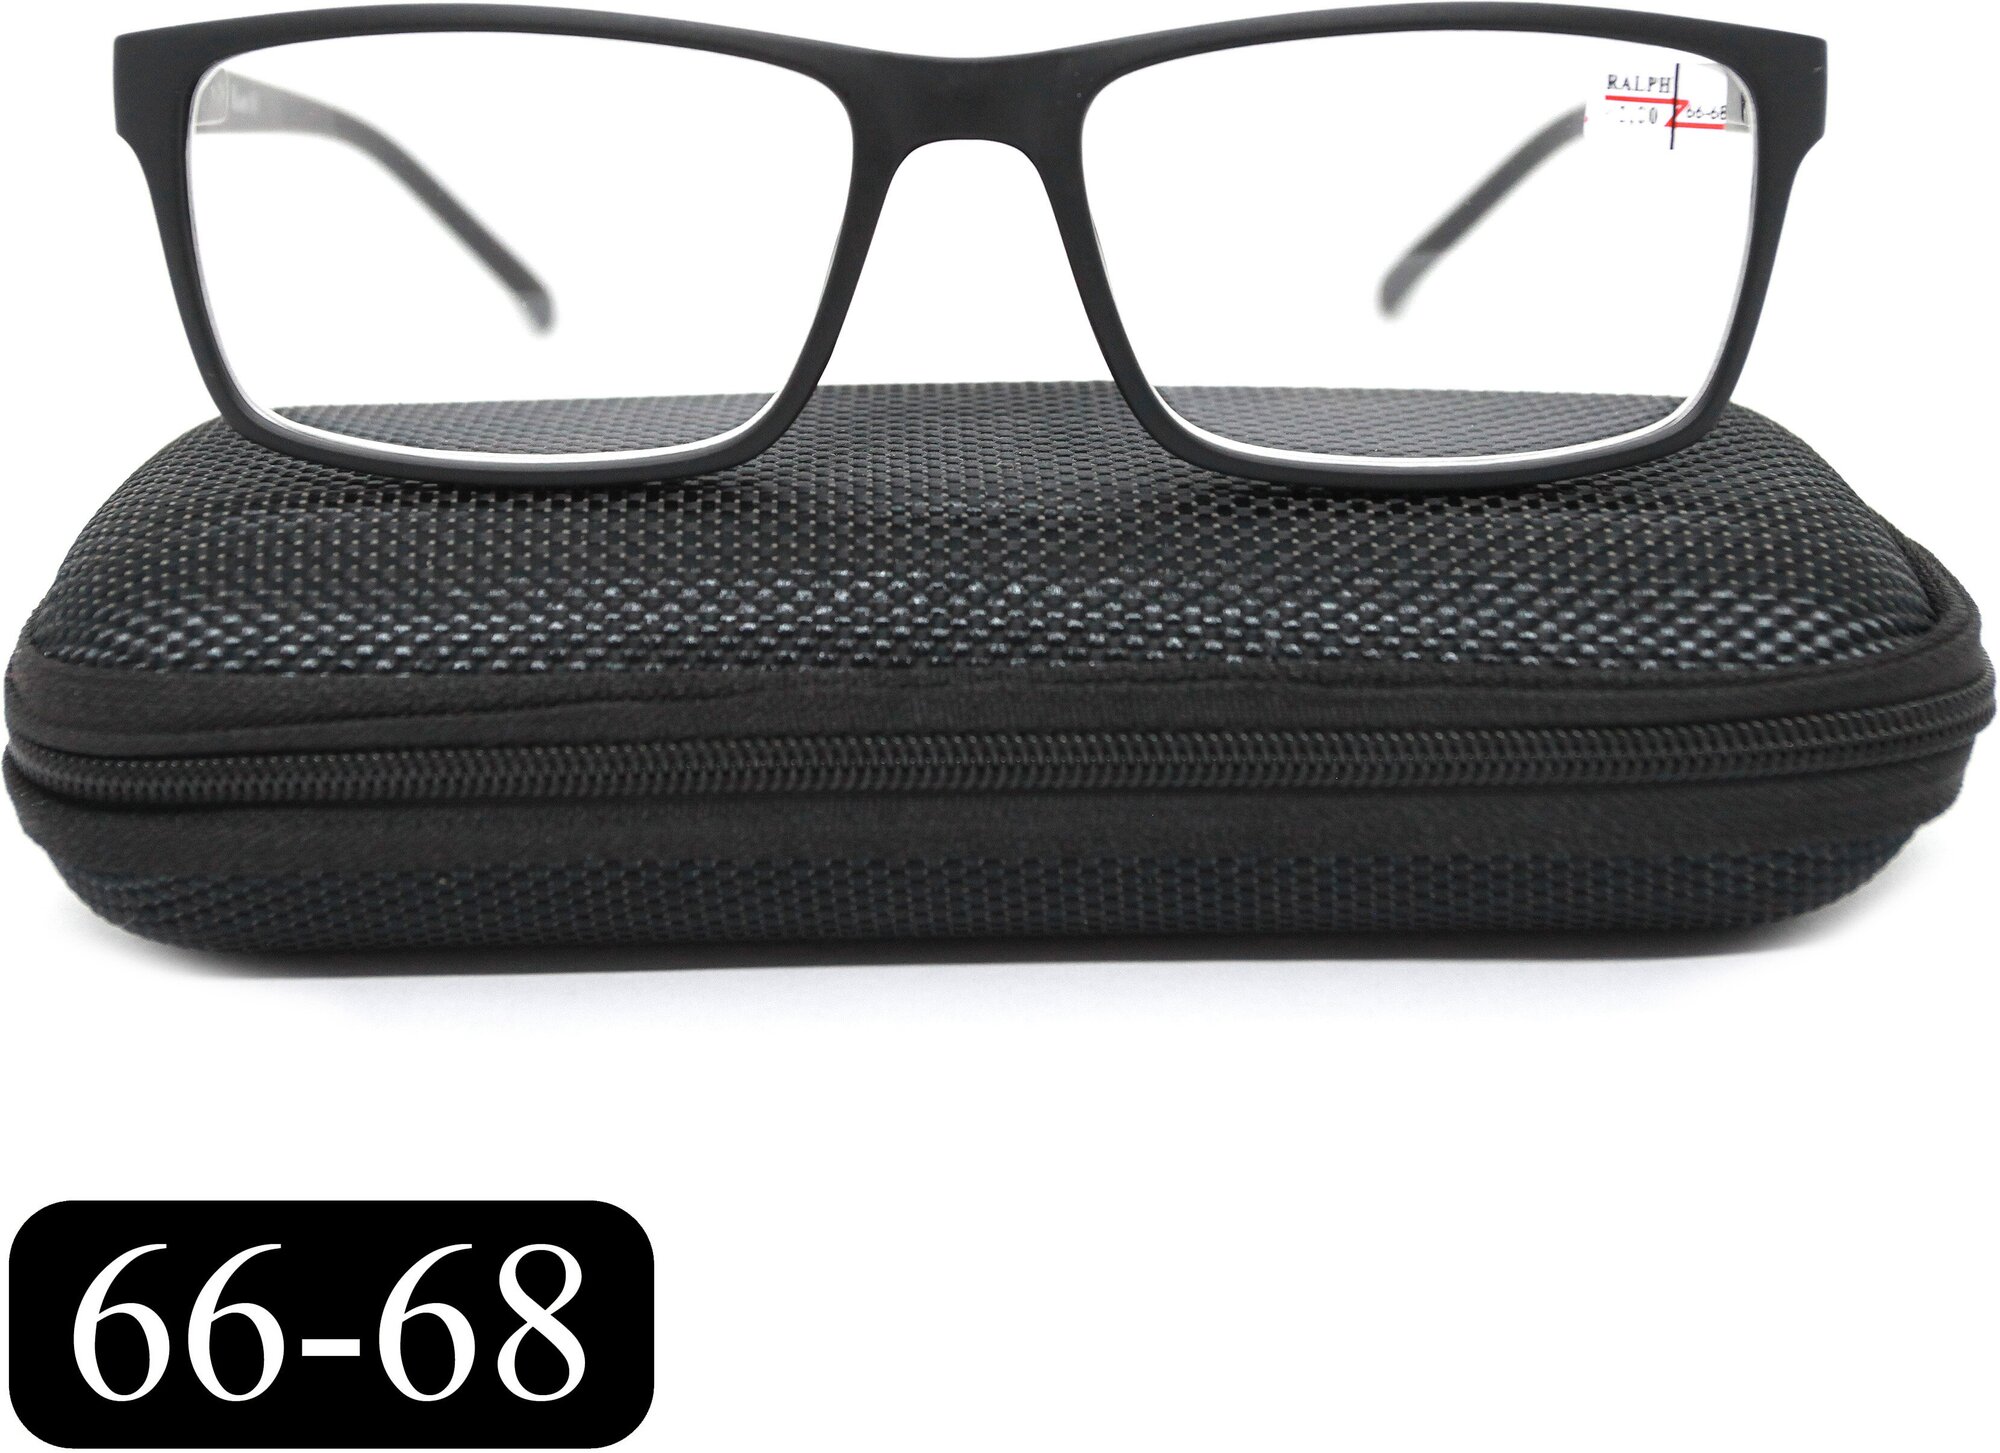 Очки для чтения 66-68 на широкое лицо (+0.50) RALPH 0491-C1, с футляром, цвет черный, линзы пластик, РЦ 66-68